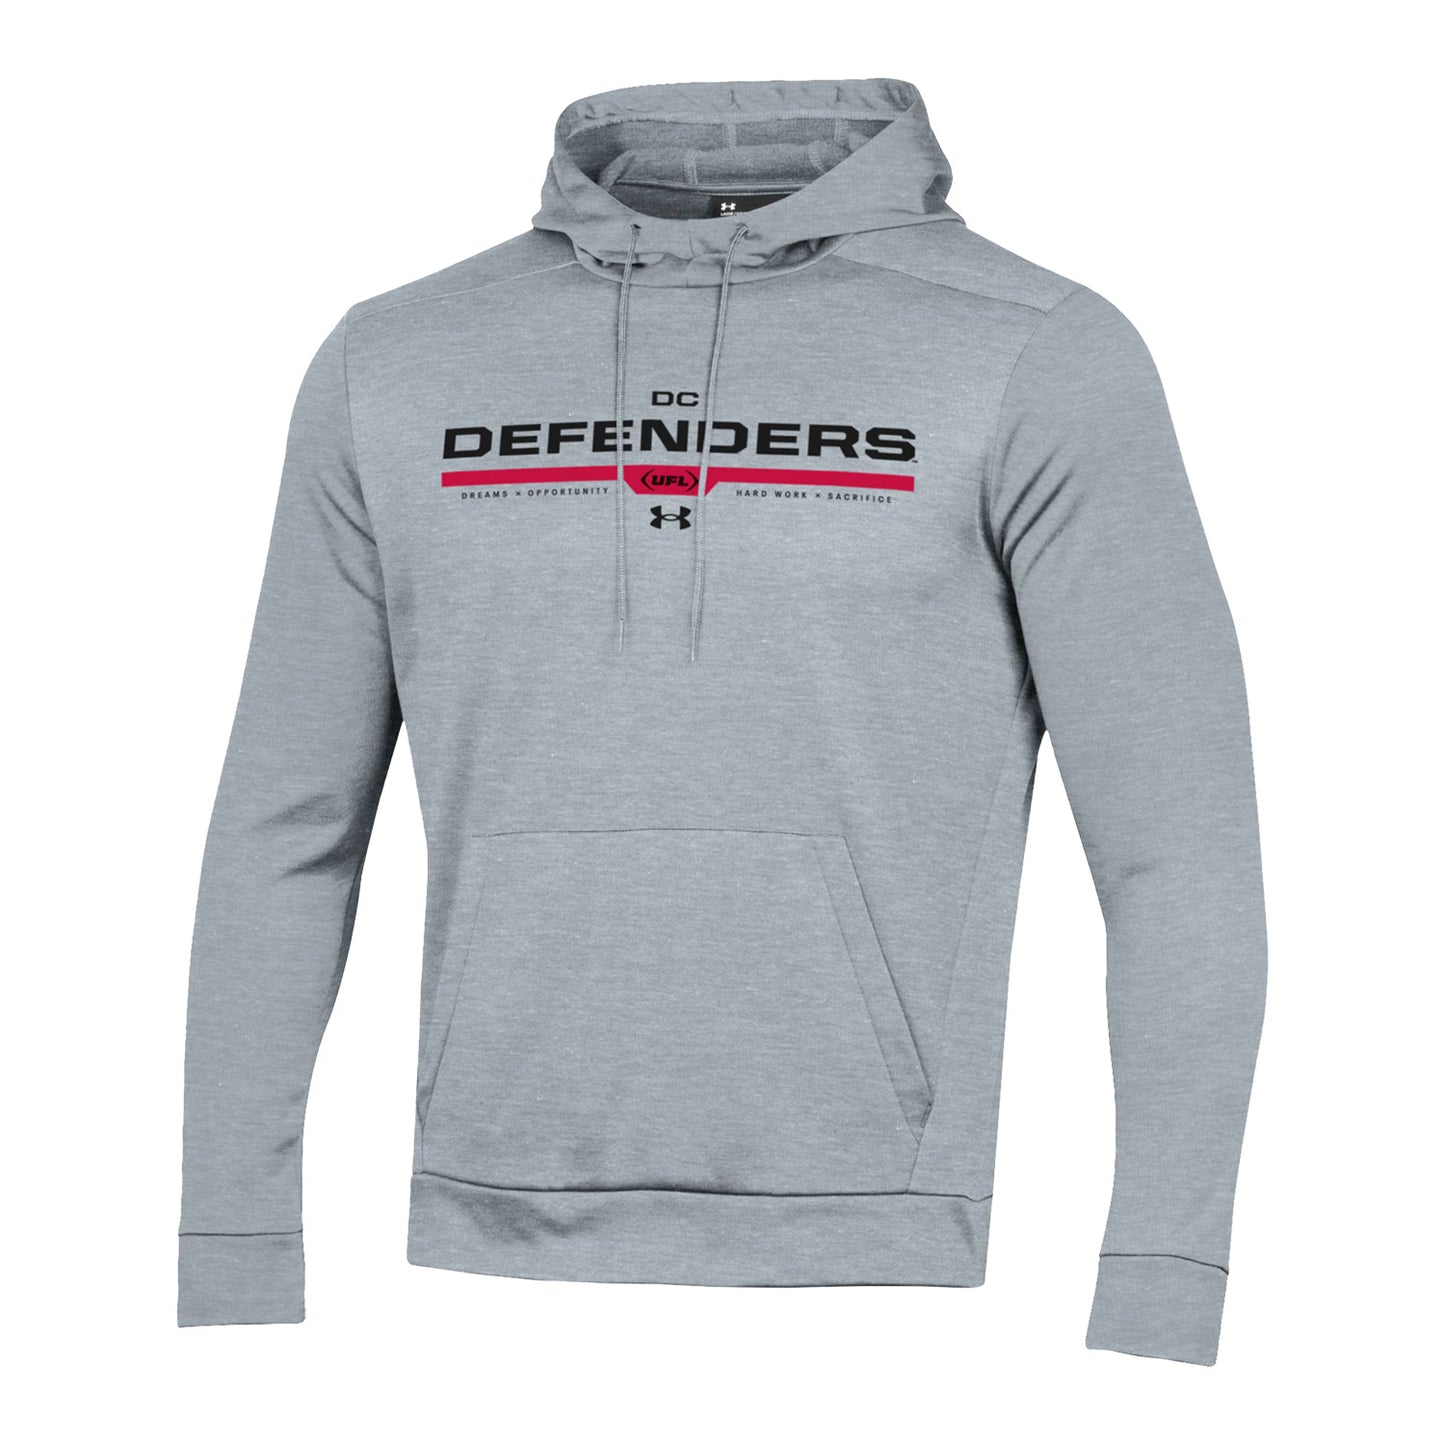 Under Armour D.C. Defenders Fleece Sweatshirt In Grey - Front View